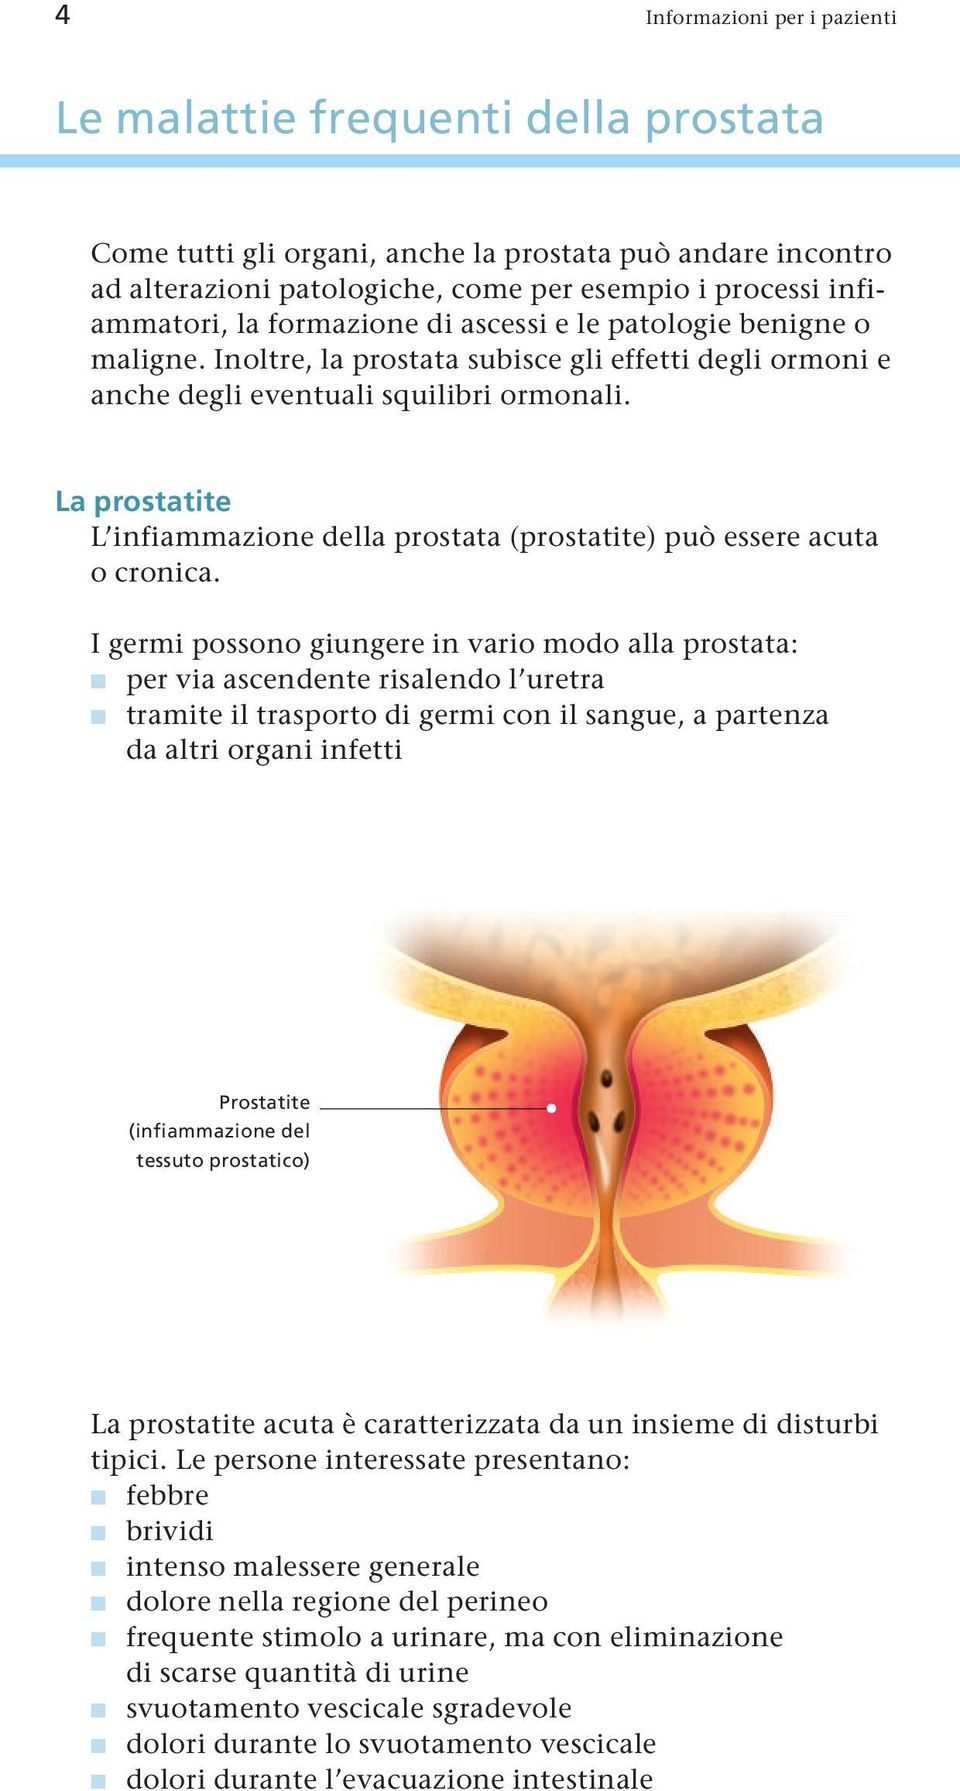 La prostatite L infiammazione della prostata (prostatite) può essere acuta o cronica.